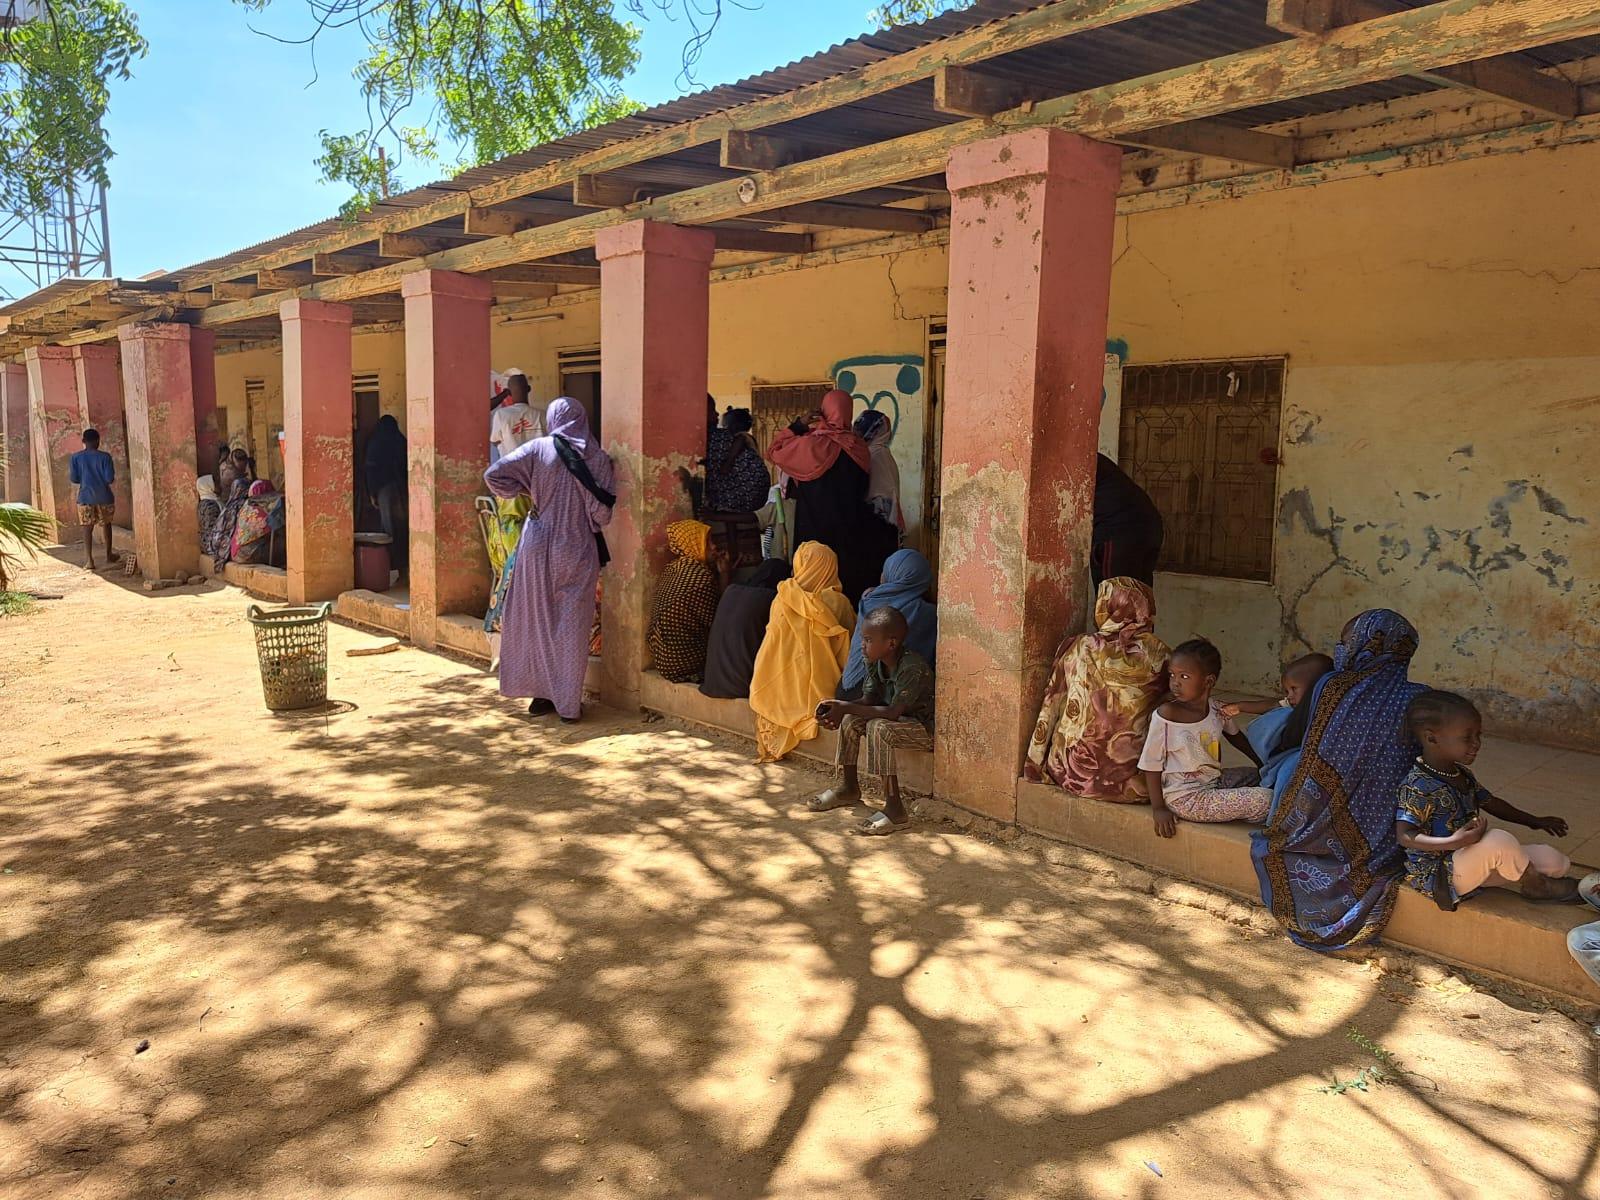 Hier, à Wad Madani, au Soudan, une équipe de MSF a commencé à fournir des soins de santé vitaux à des centaines de personnes déplacées fuyant la violence de Khartoum, grâce à des cliniques mobiles. 